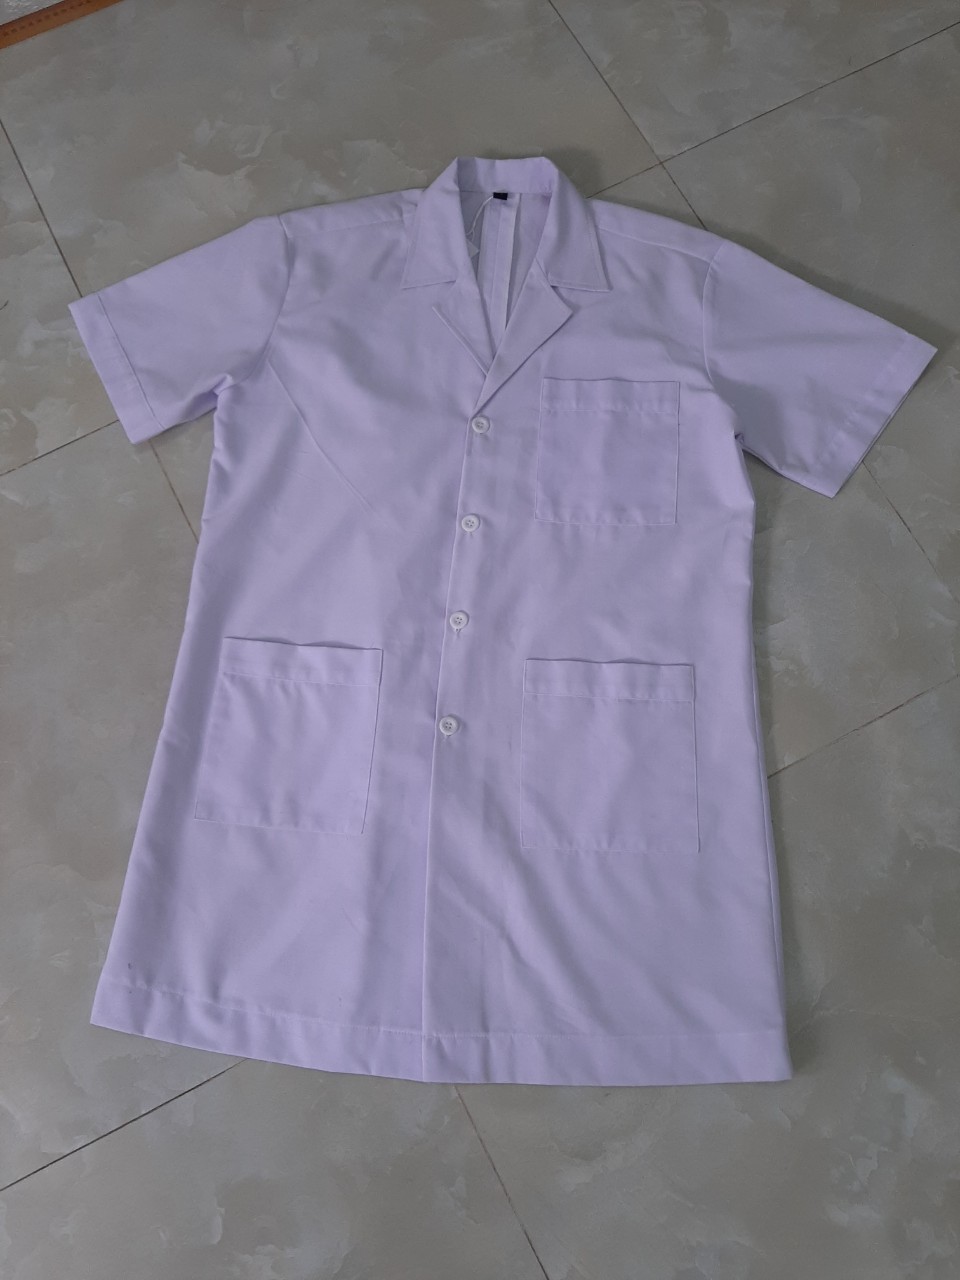 Mẫu áo blouse trắng dành cho nam nhân viên y tế đã được may gia công tại Xưởng DOSI